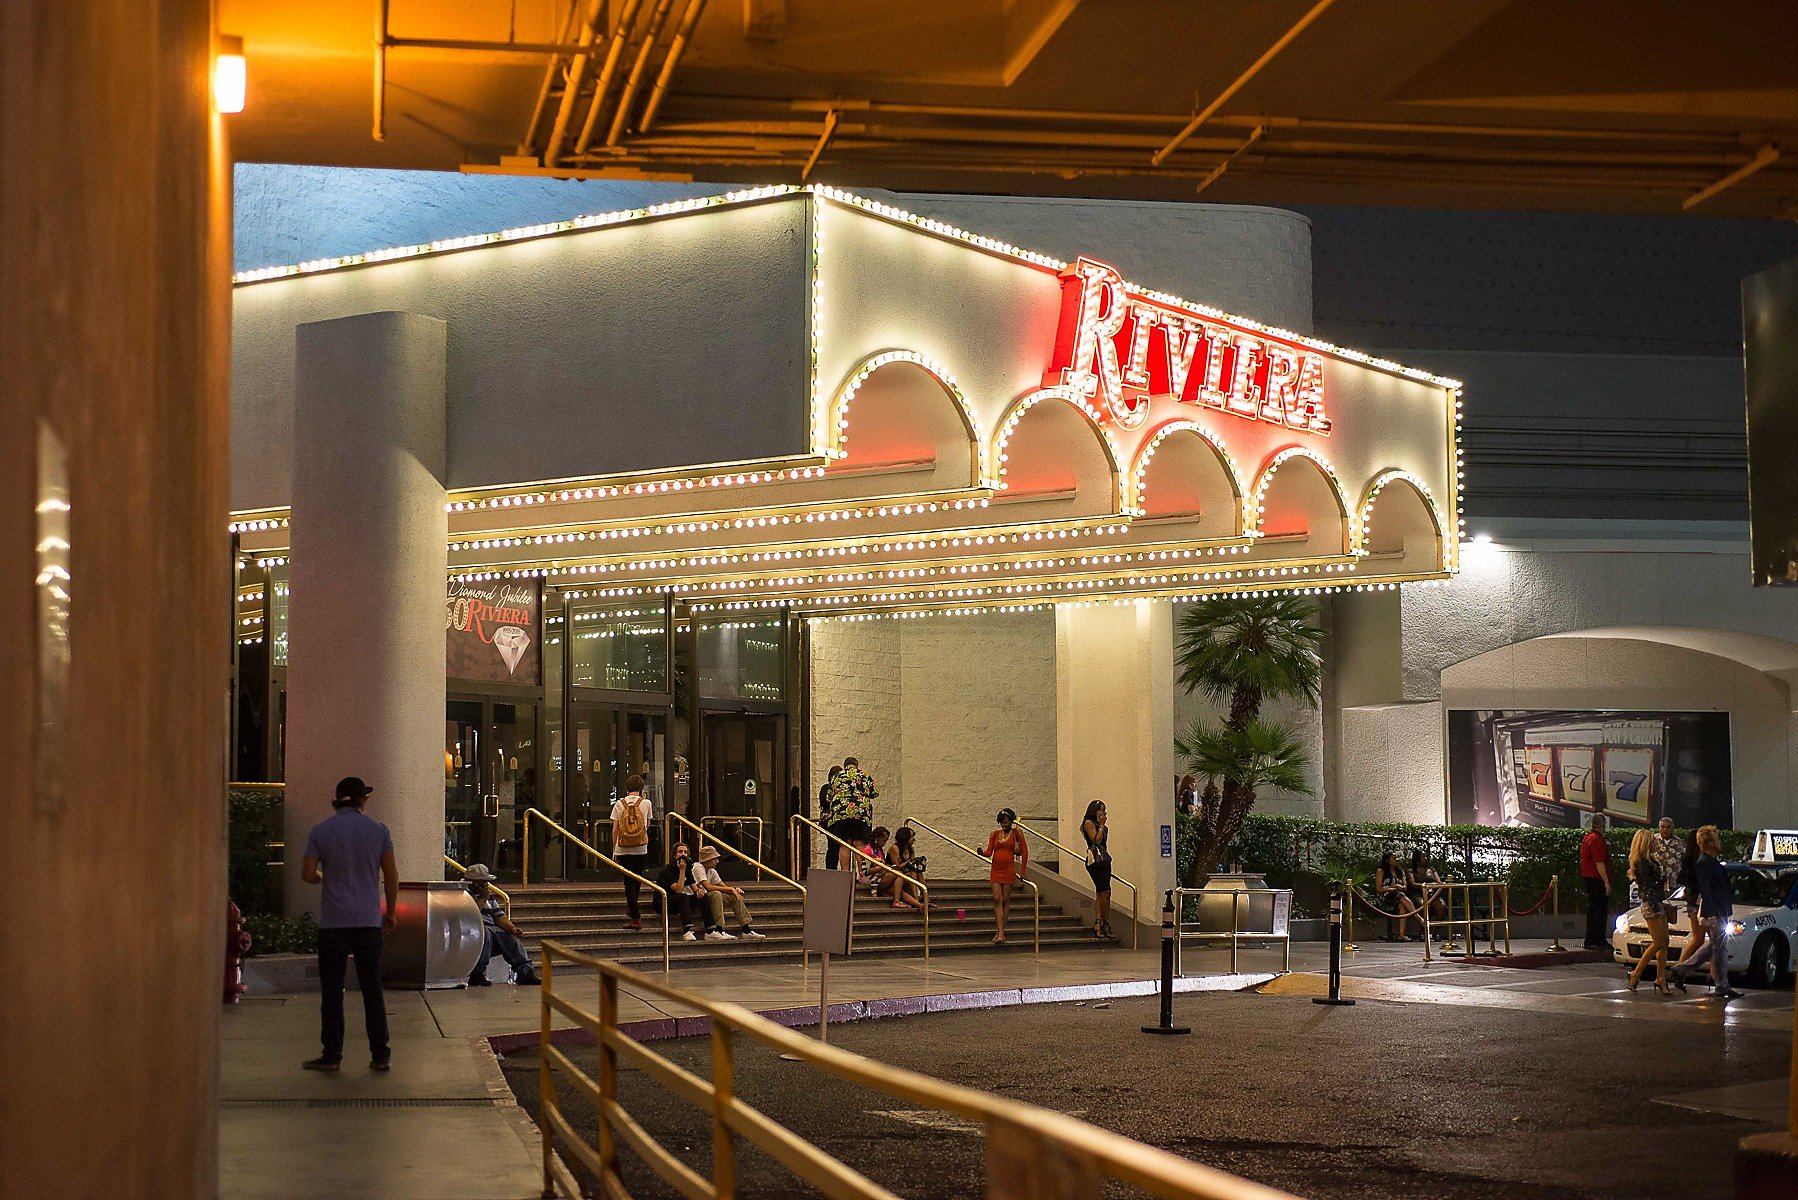 The Riviera Hotel And Casino (1955 - 2015) 